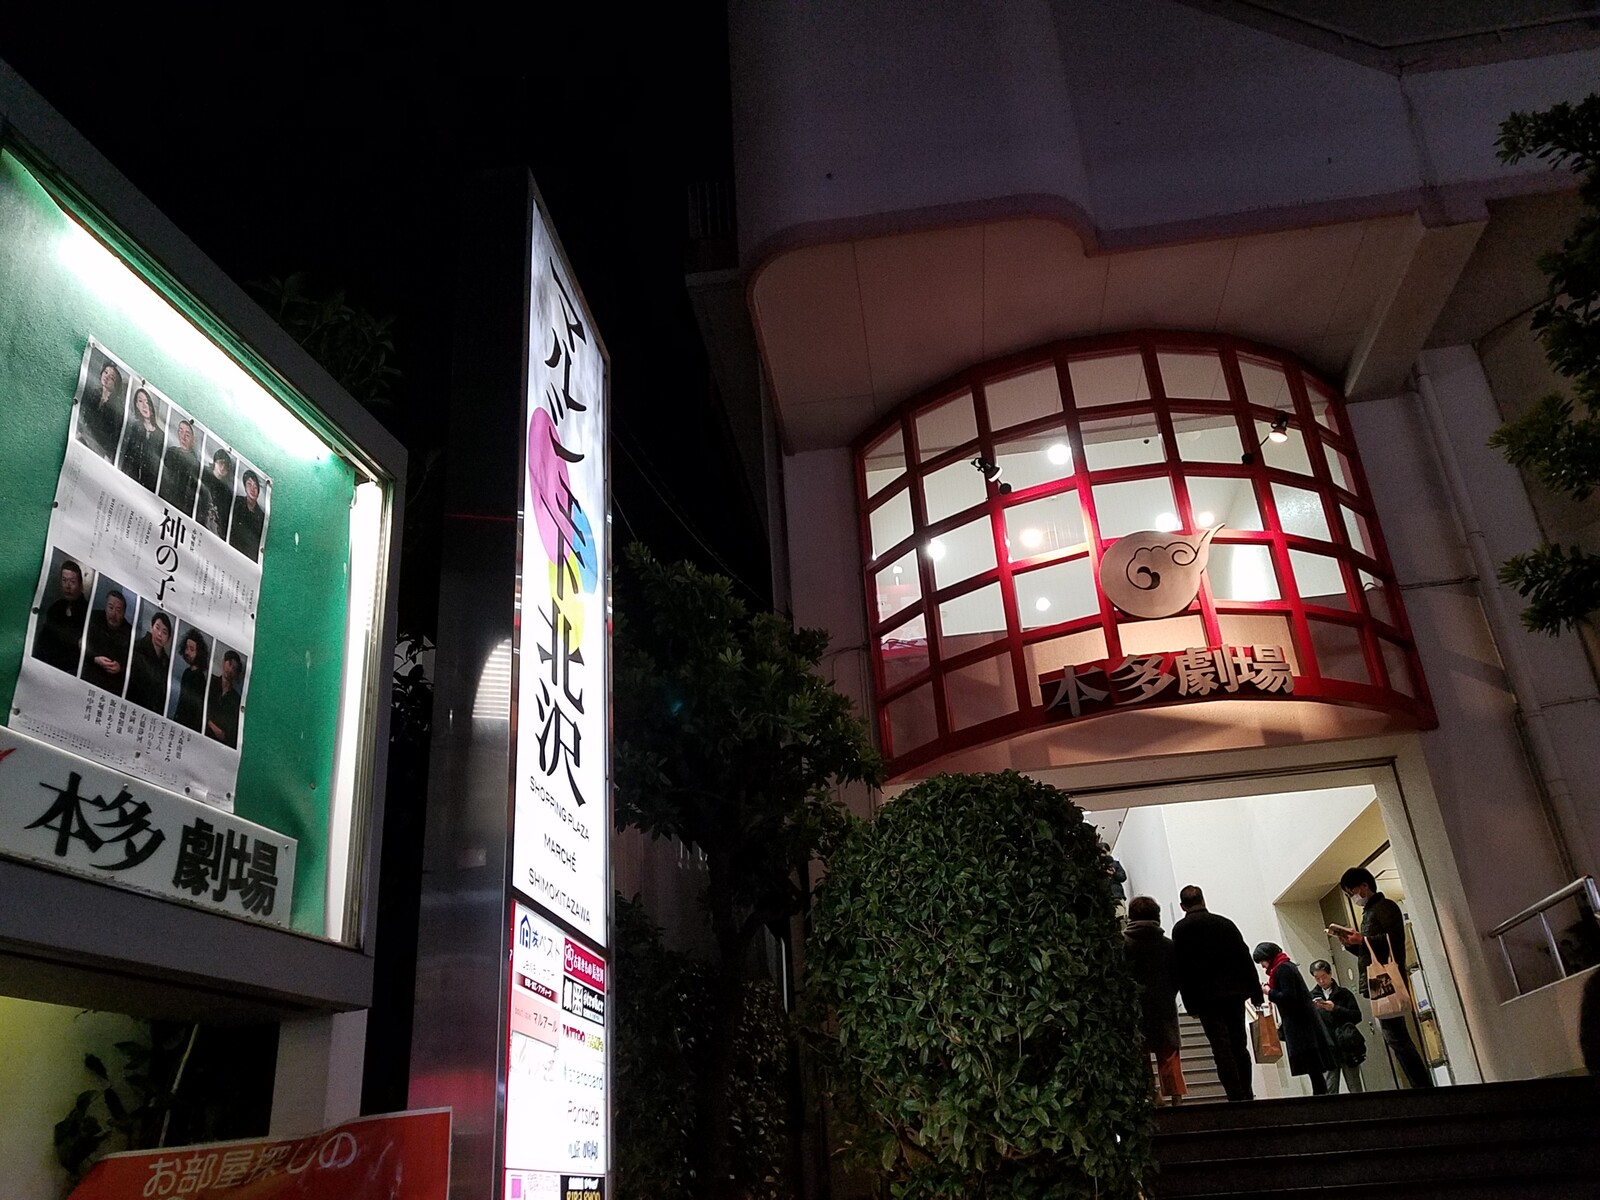 堀北さん 長澤まさみ様の ライクドロシー 以来六年一か月ぶりの下北沢 本多劇場です トラさんの純真